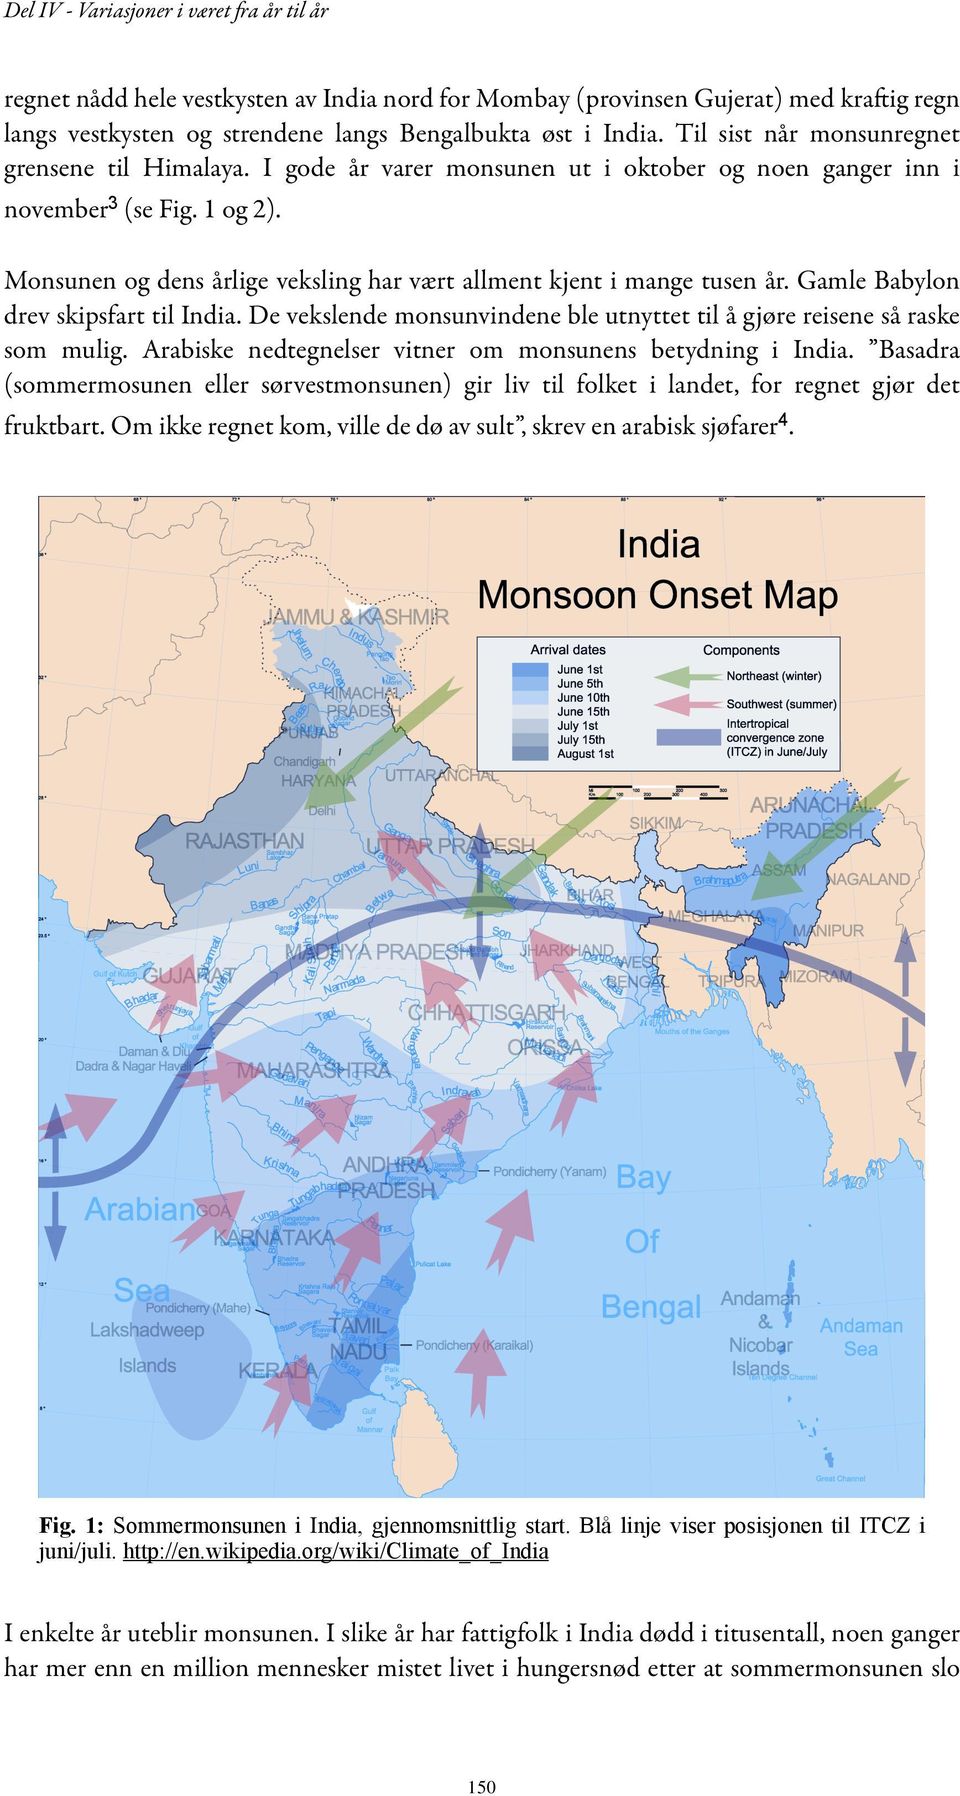 Gamle Babylon drev skipsfart til India. De vekslende monsunvindene ble utnyttet til å gjøre reisene så raske som mulig. Arabiske nedtegnelser vitner om monsunens betydning i India.